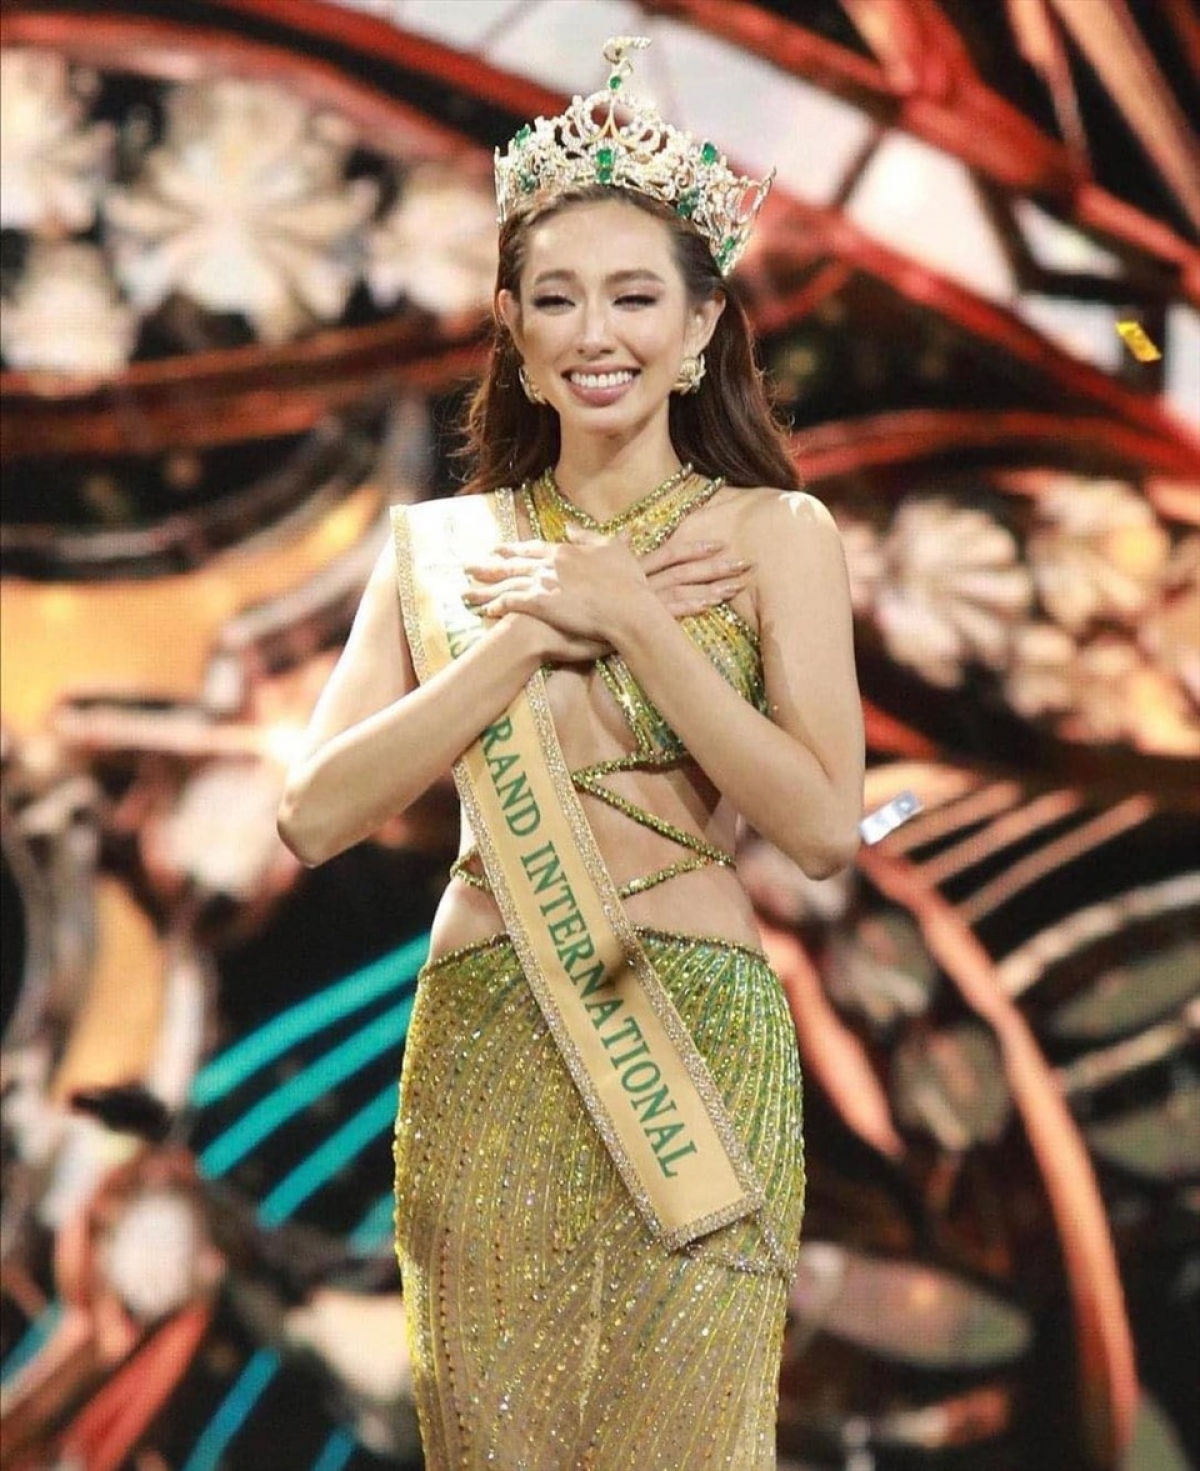 Còn đây là hình ảnh Nguyễn Thúc Thùy Tiên trong đêm đăng quang Miss Grand International 2021. Nhìn hình ảnh cô hiện tại, chúng ta cũng có thể hiểu cô bé đã tiến xa như thế nào